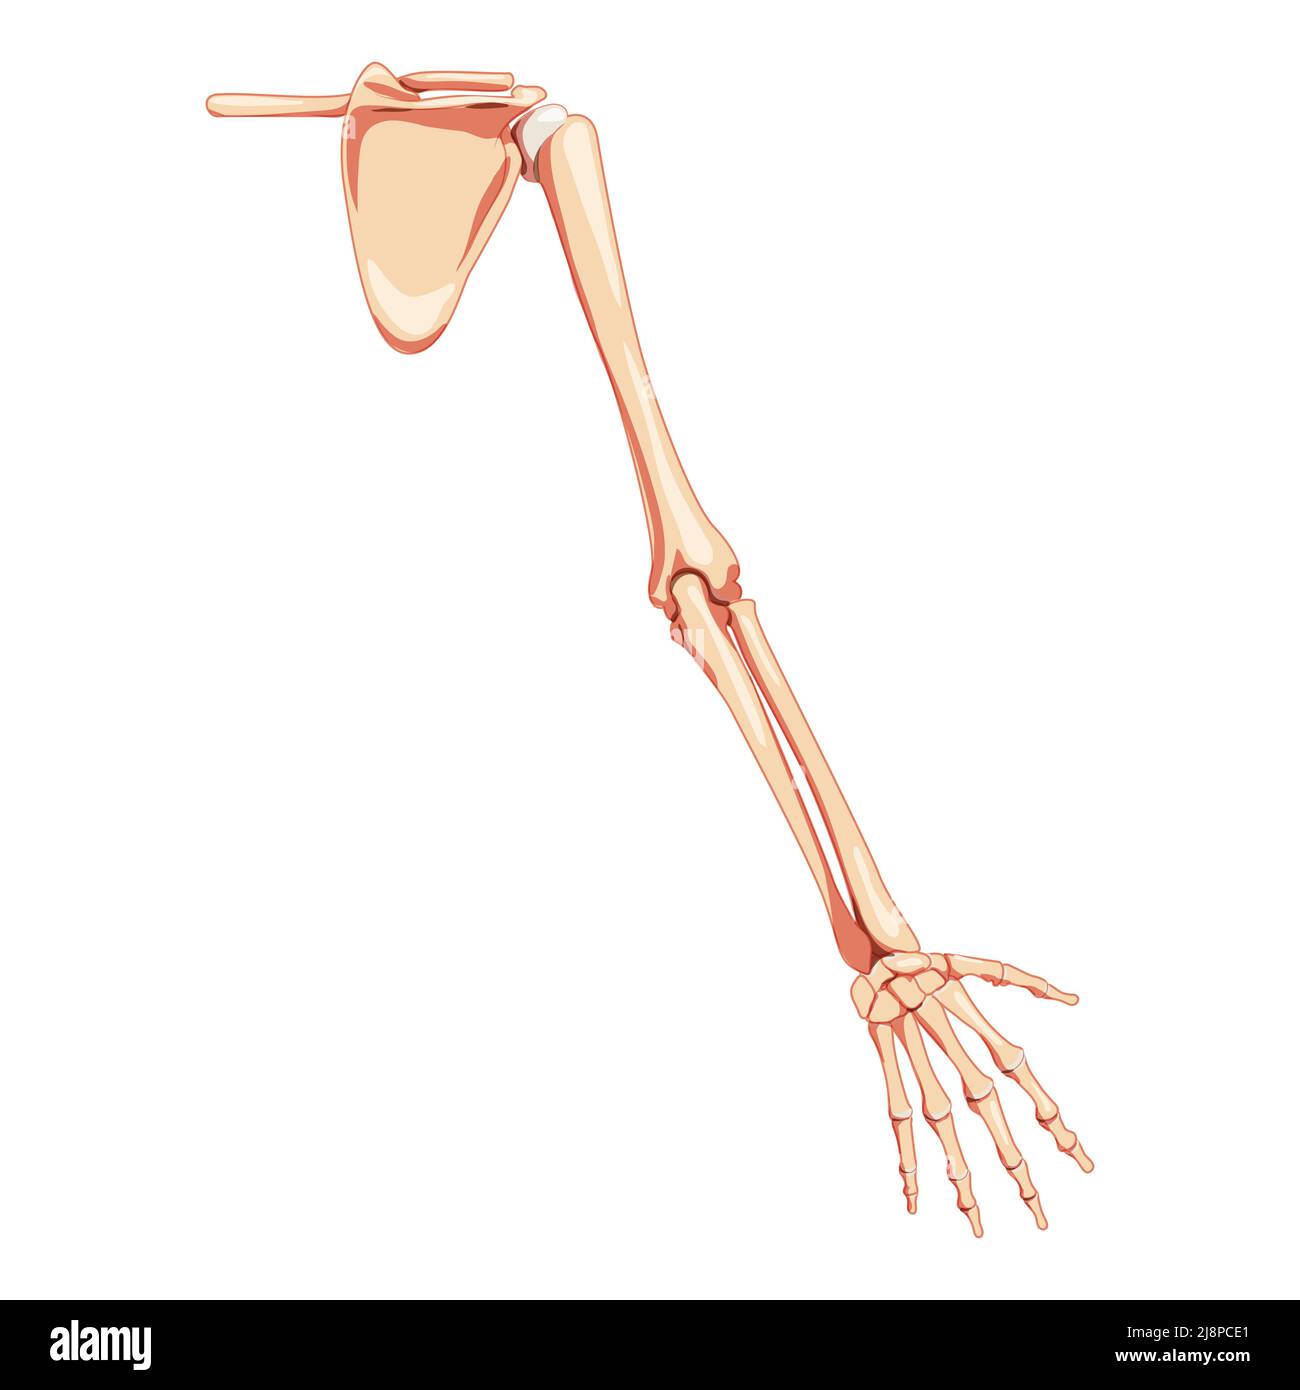 Braccio dell'arto superiore con cintura a bandoliera scheletro Vista posteriore umana. Set di colori naturali piatti realistici anatomicamente corretti illustrazione vettoriale dell'anatomia isolata su sfondo bianco Illustrazione Vettoriale